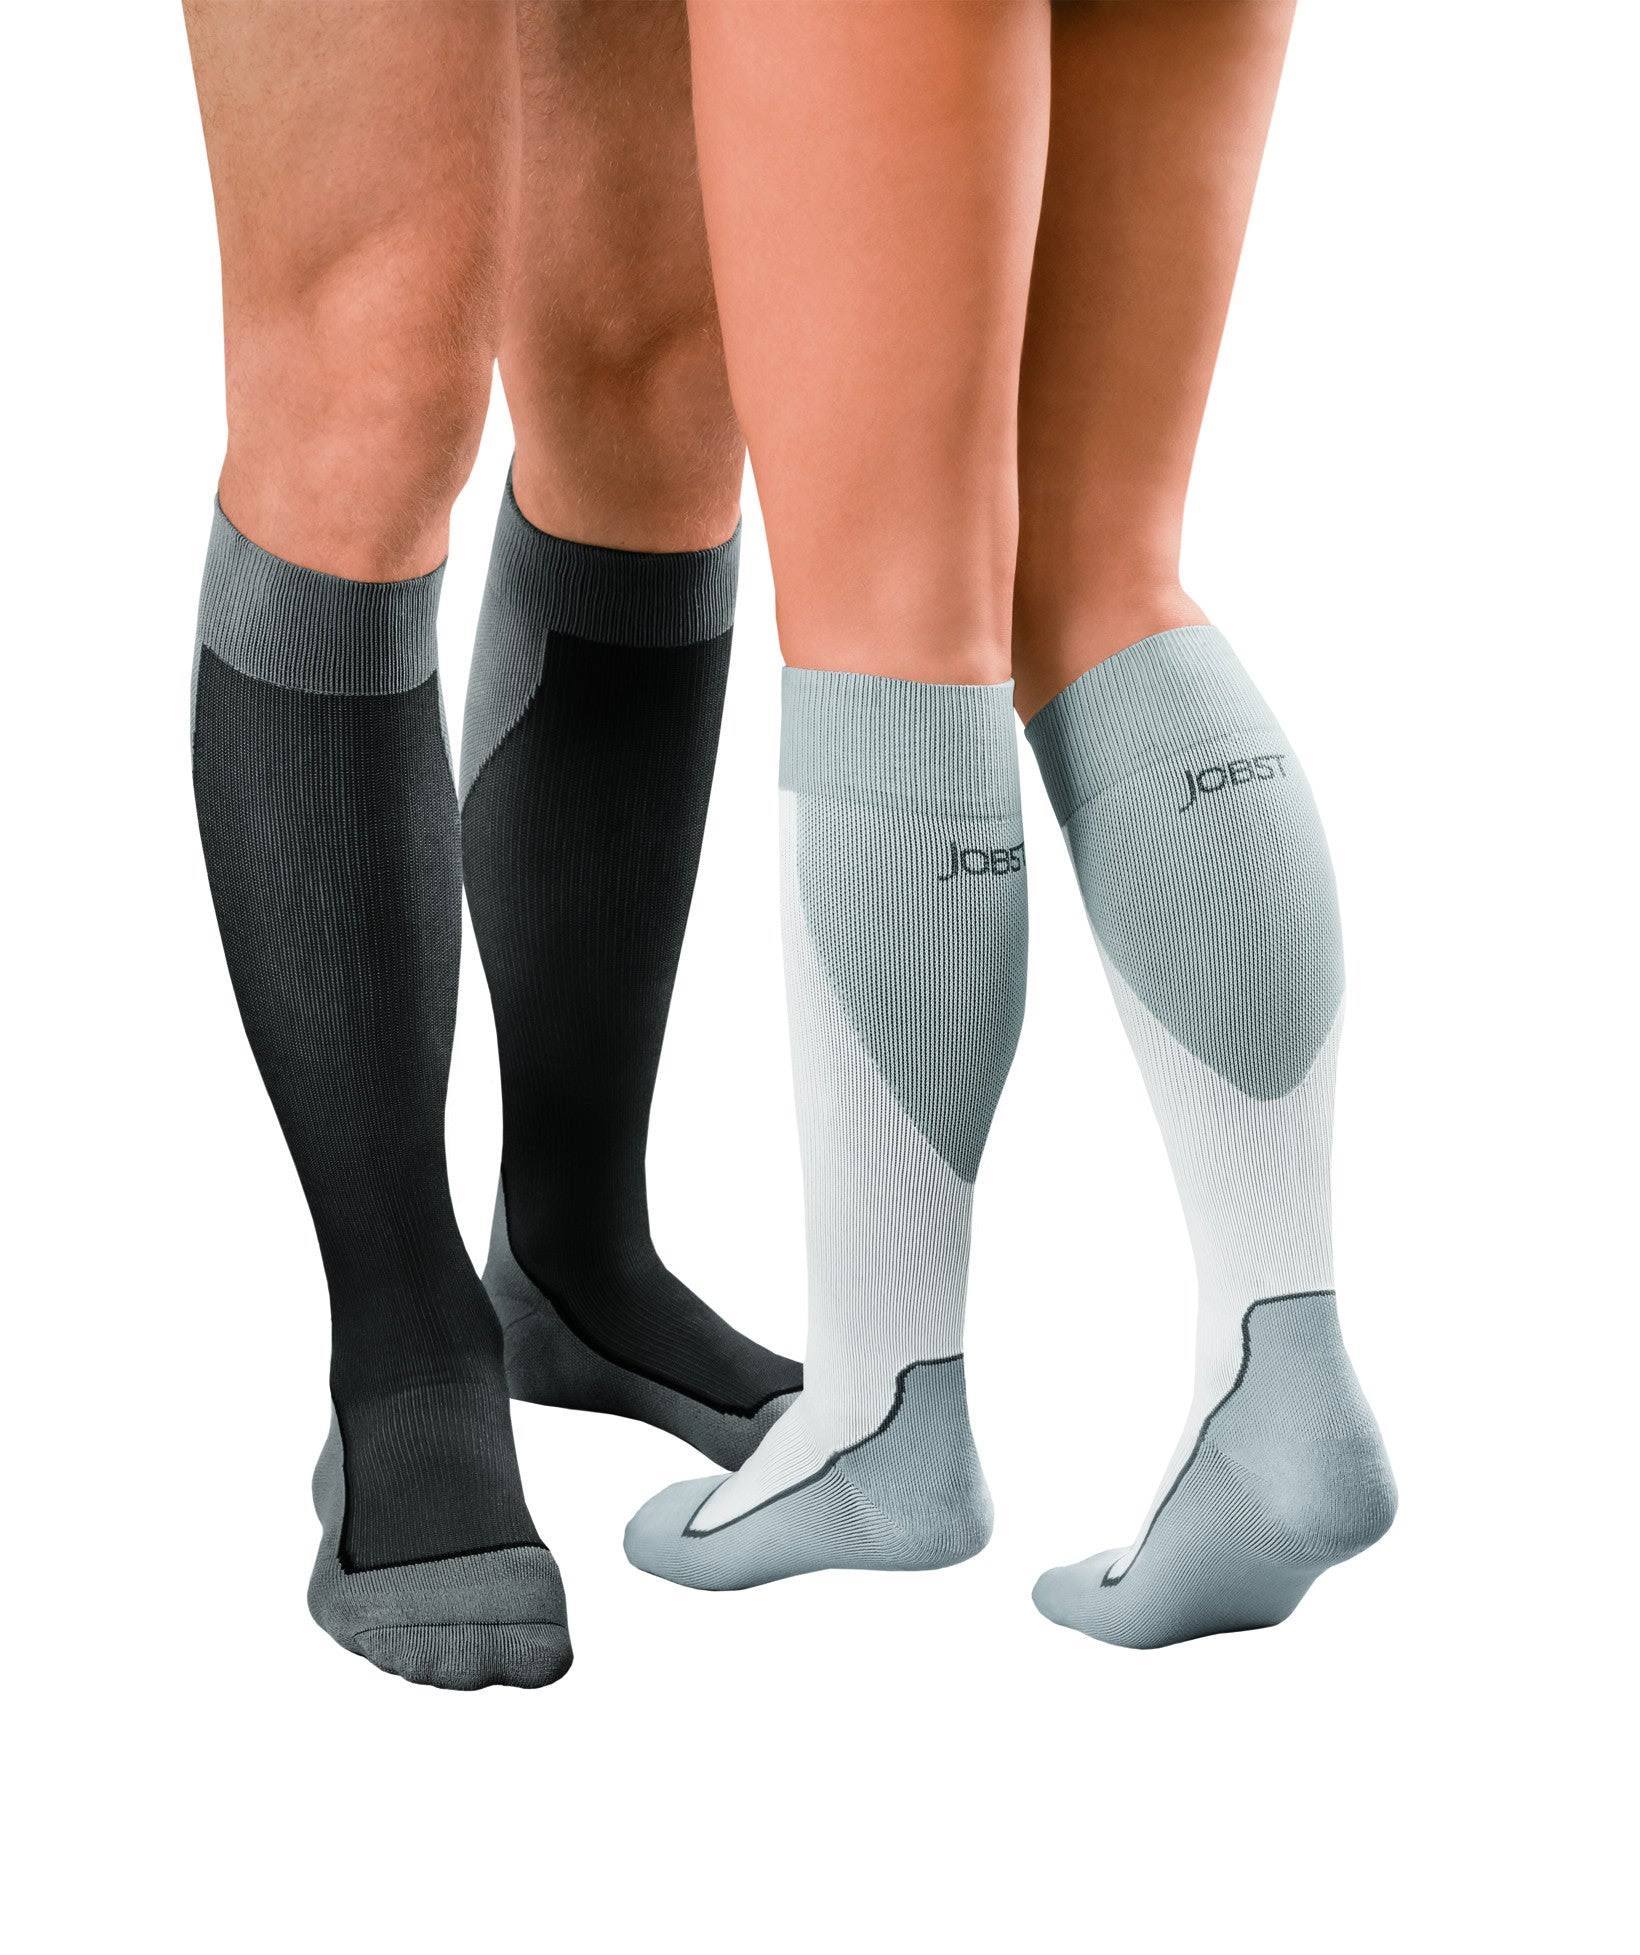 Jobst Sport Knee High 20-30 mmHg Compression Socks, Black/Cool Black, Small